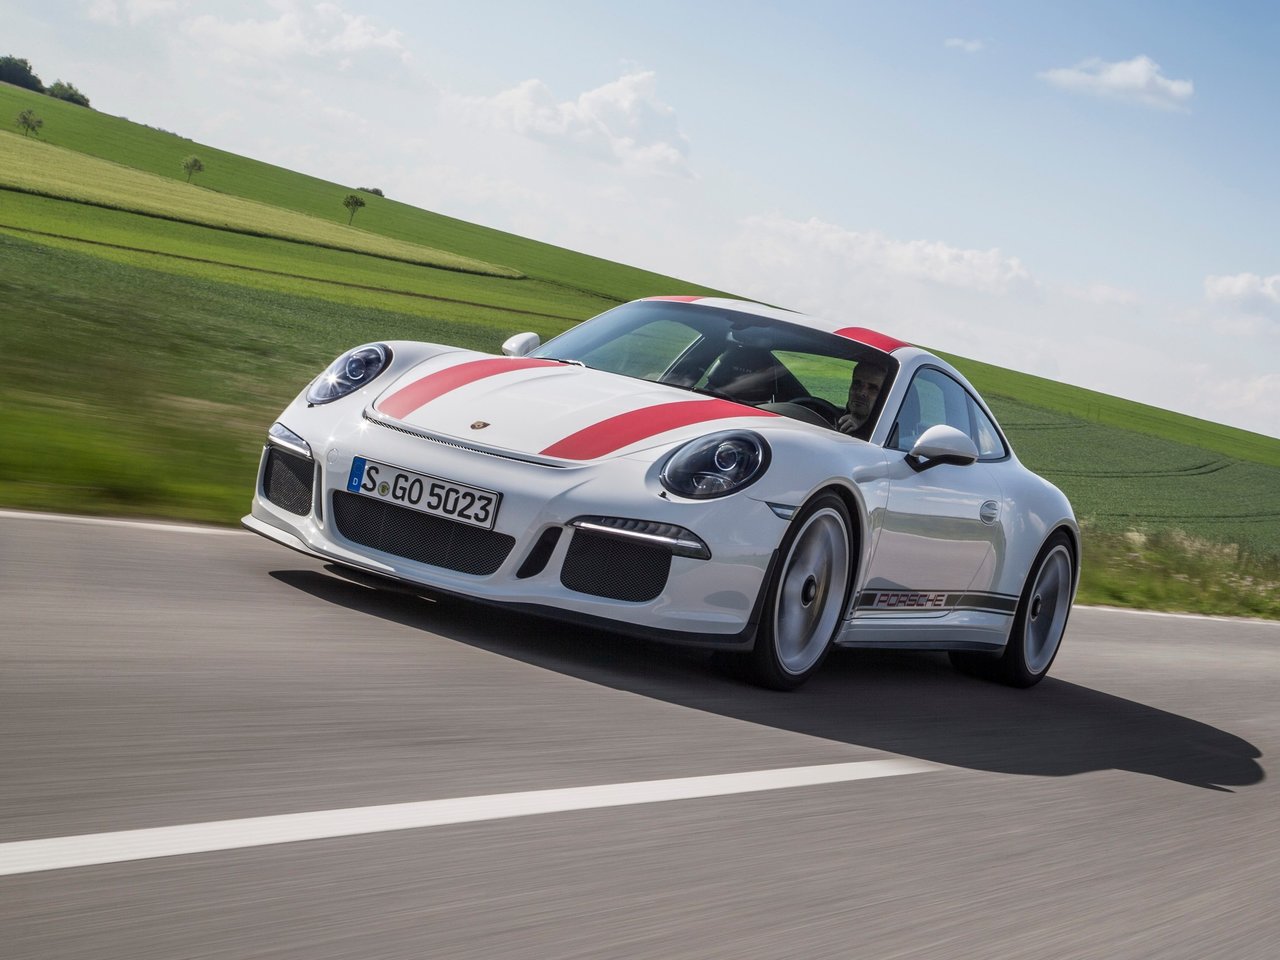 Расход газа одной комплектации купе Porsche 911 R. Разница стоимости заправки газом и бензином. Автономный пробег до и после установки ГБО.